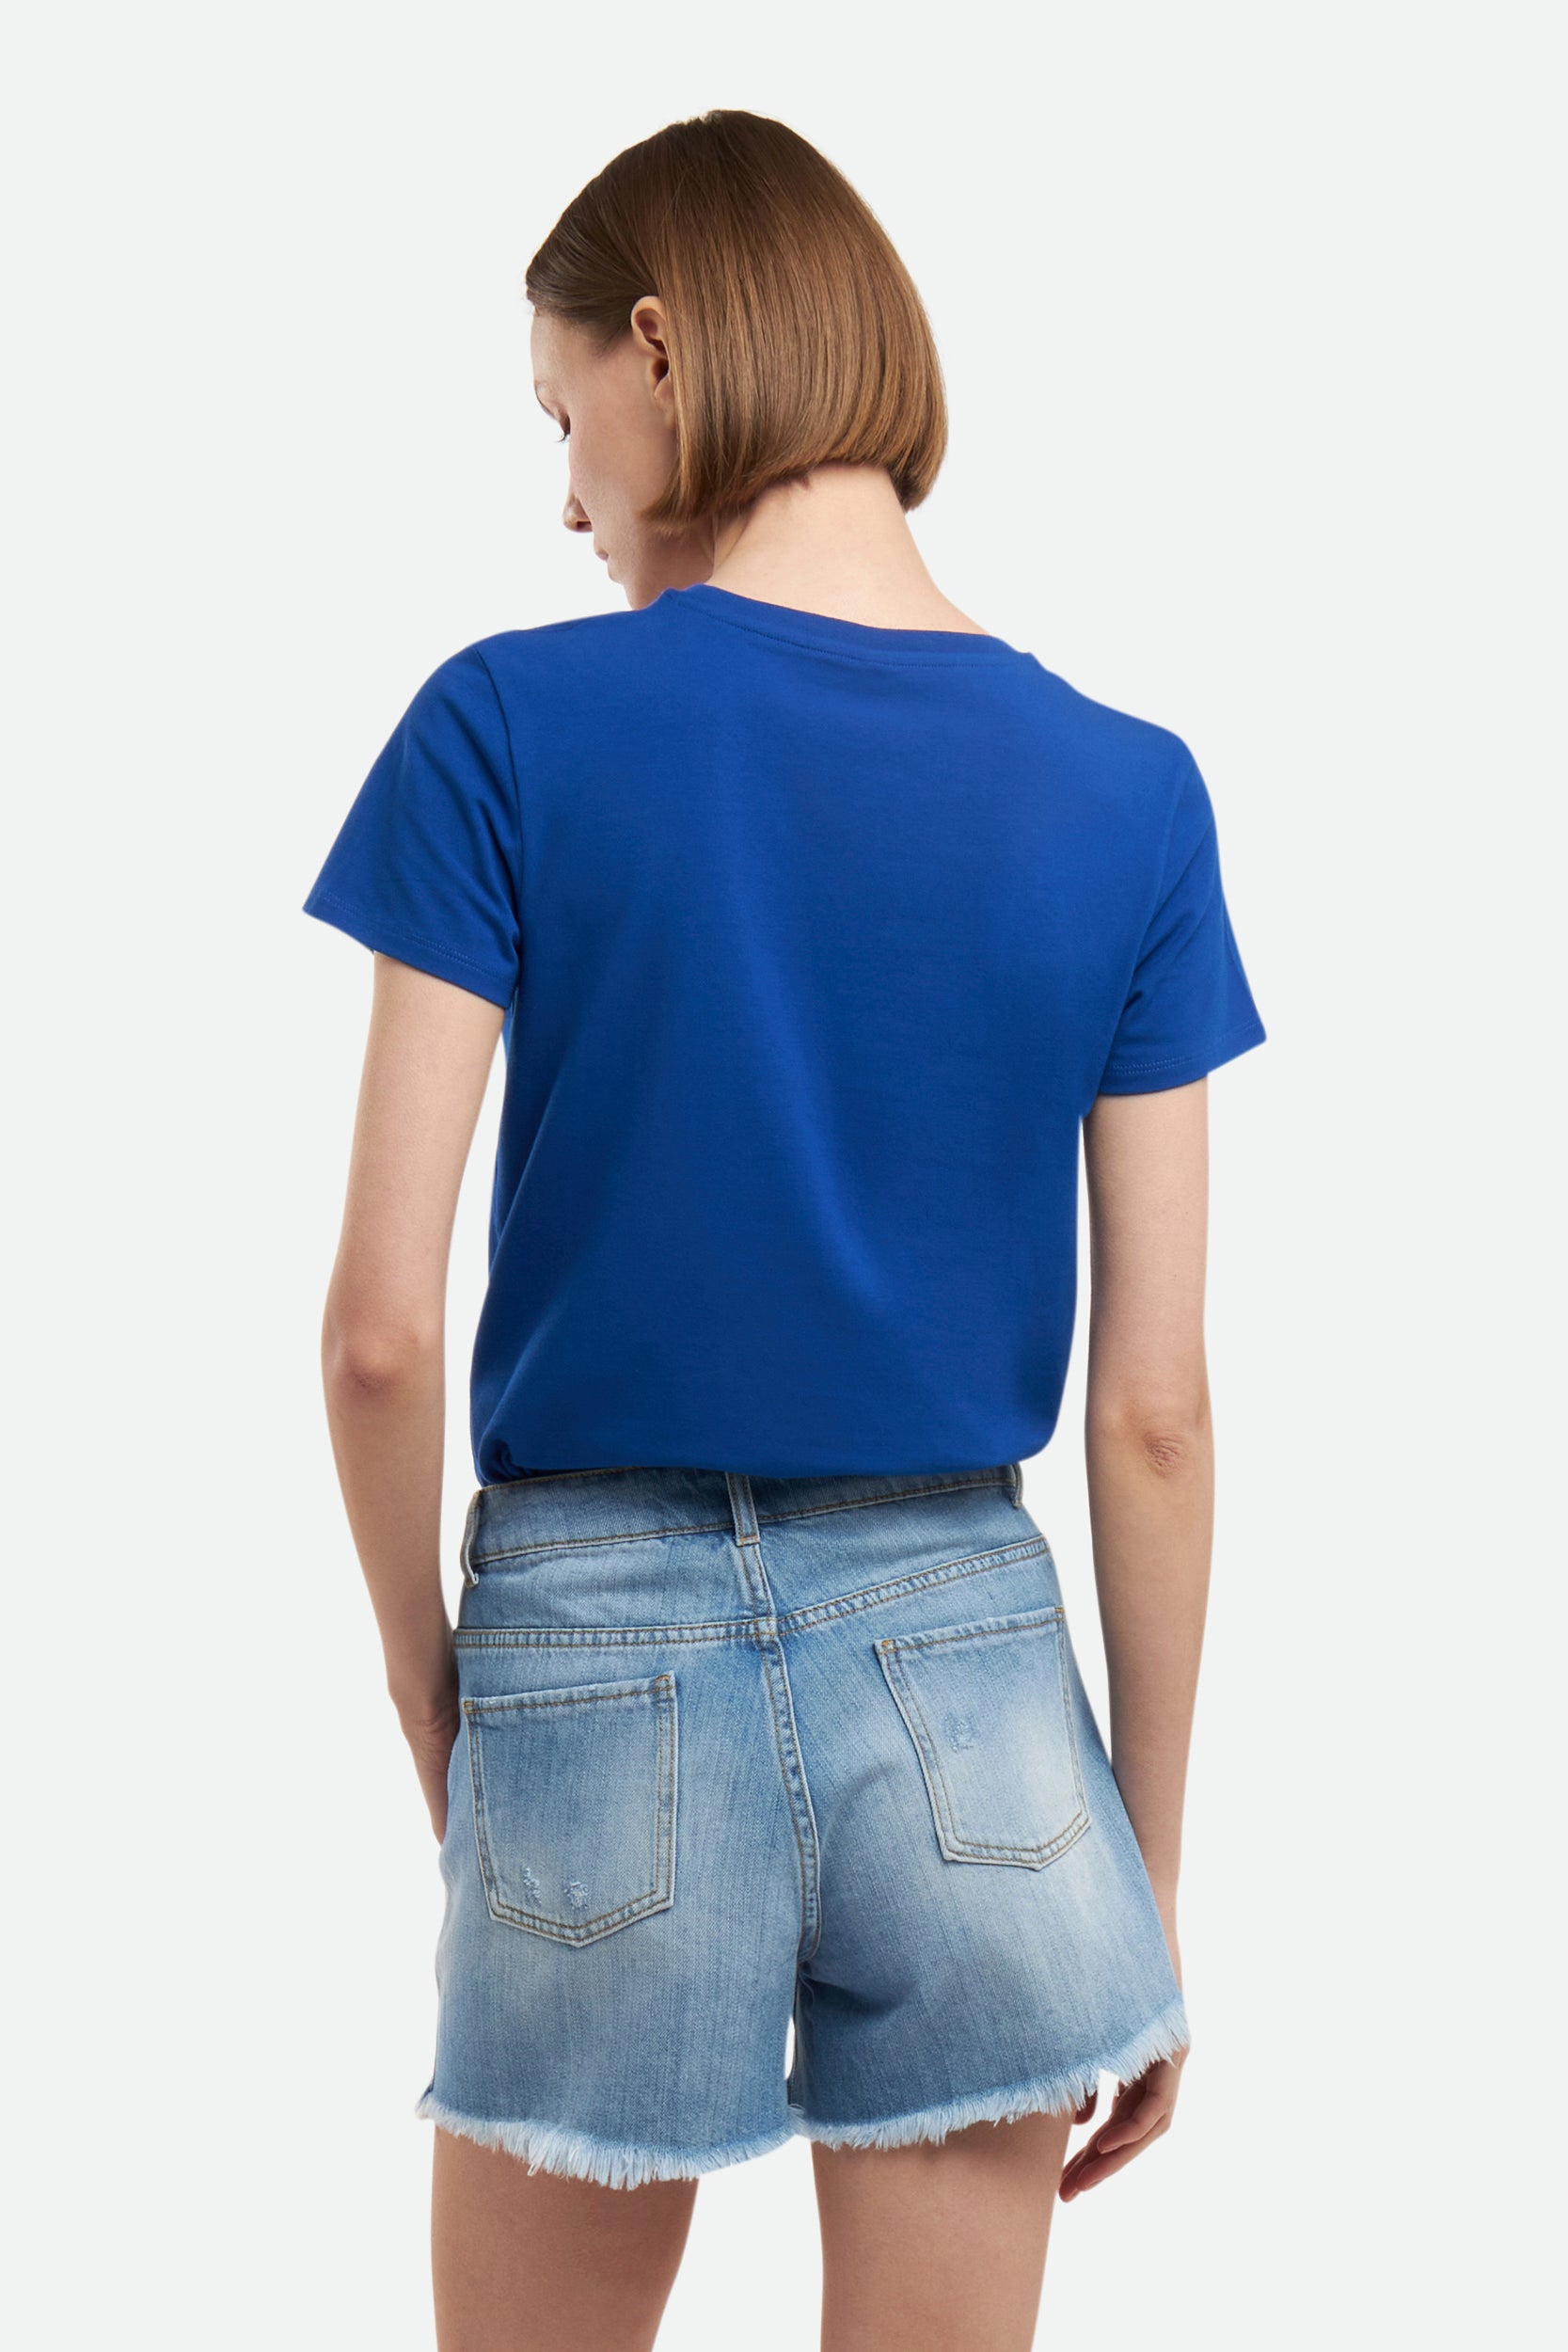 Moschino-blaues T-Shirt